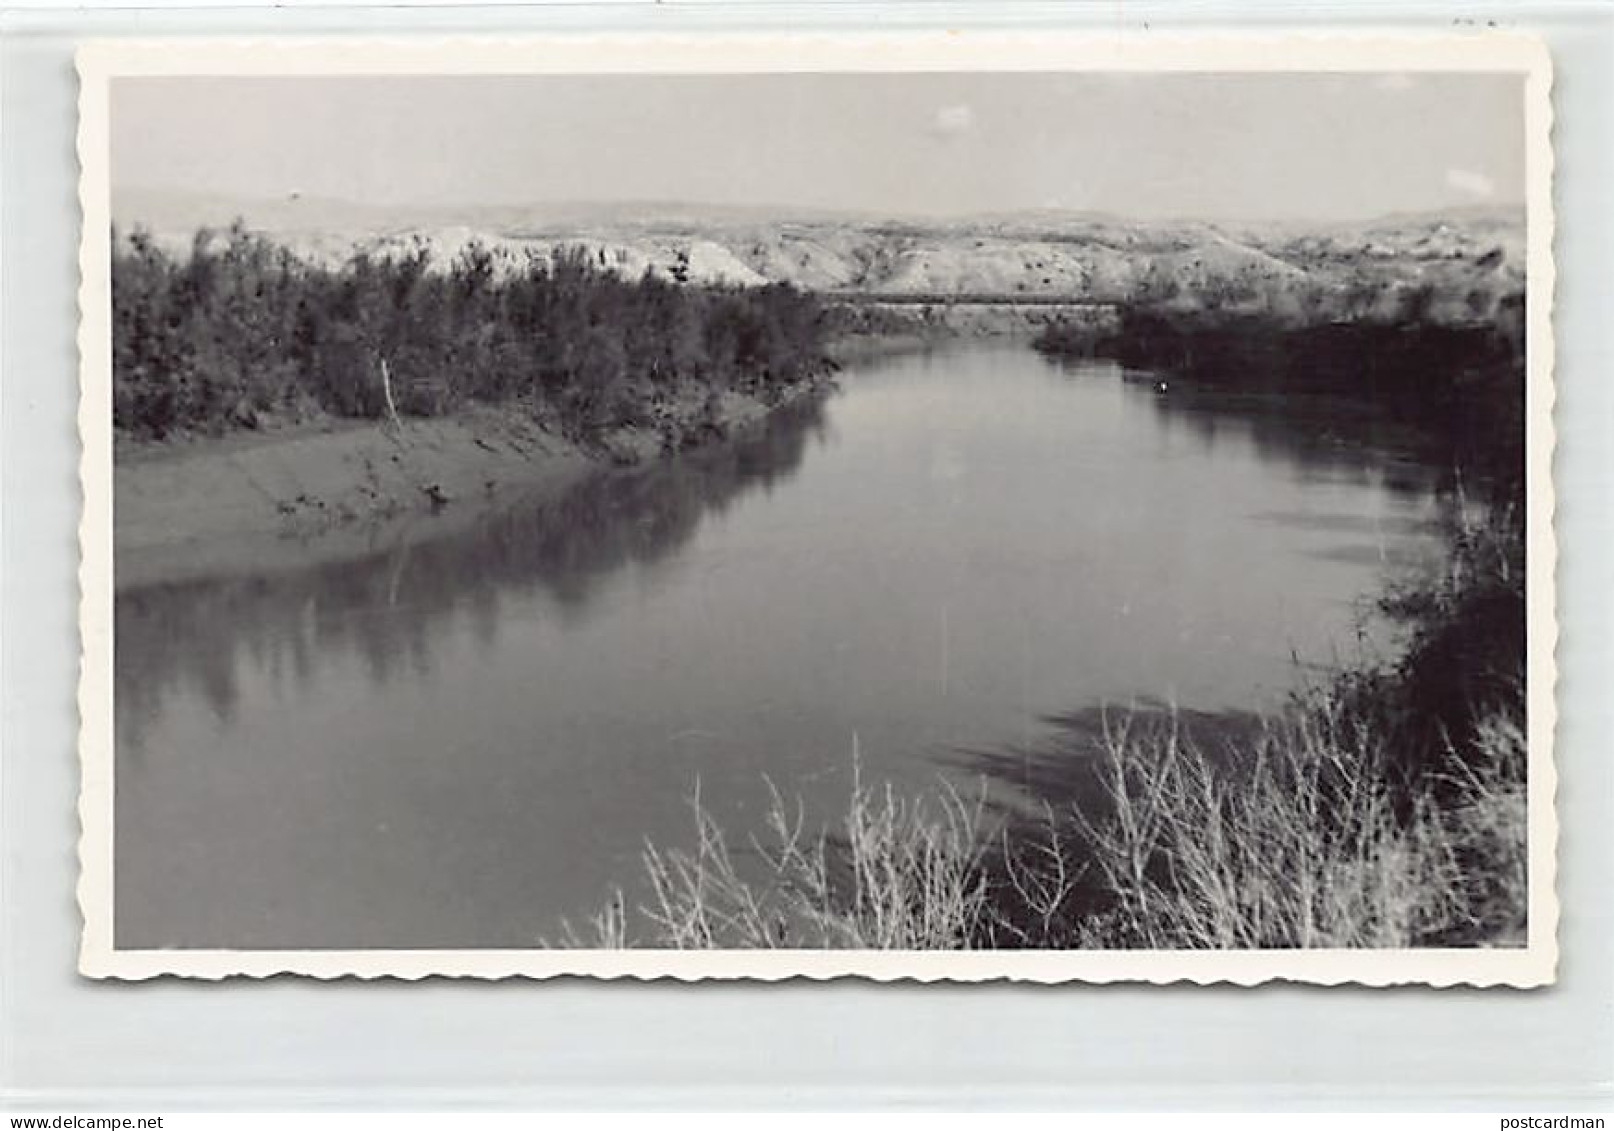 Palestine - Jordan River - PHOTOGRAPH Postcard Size - Publ. Unknown  - Palestine